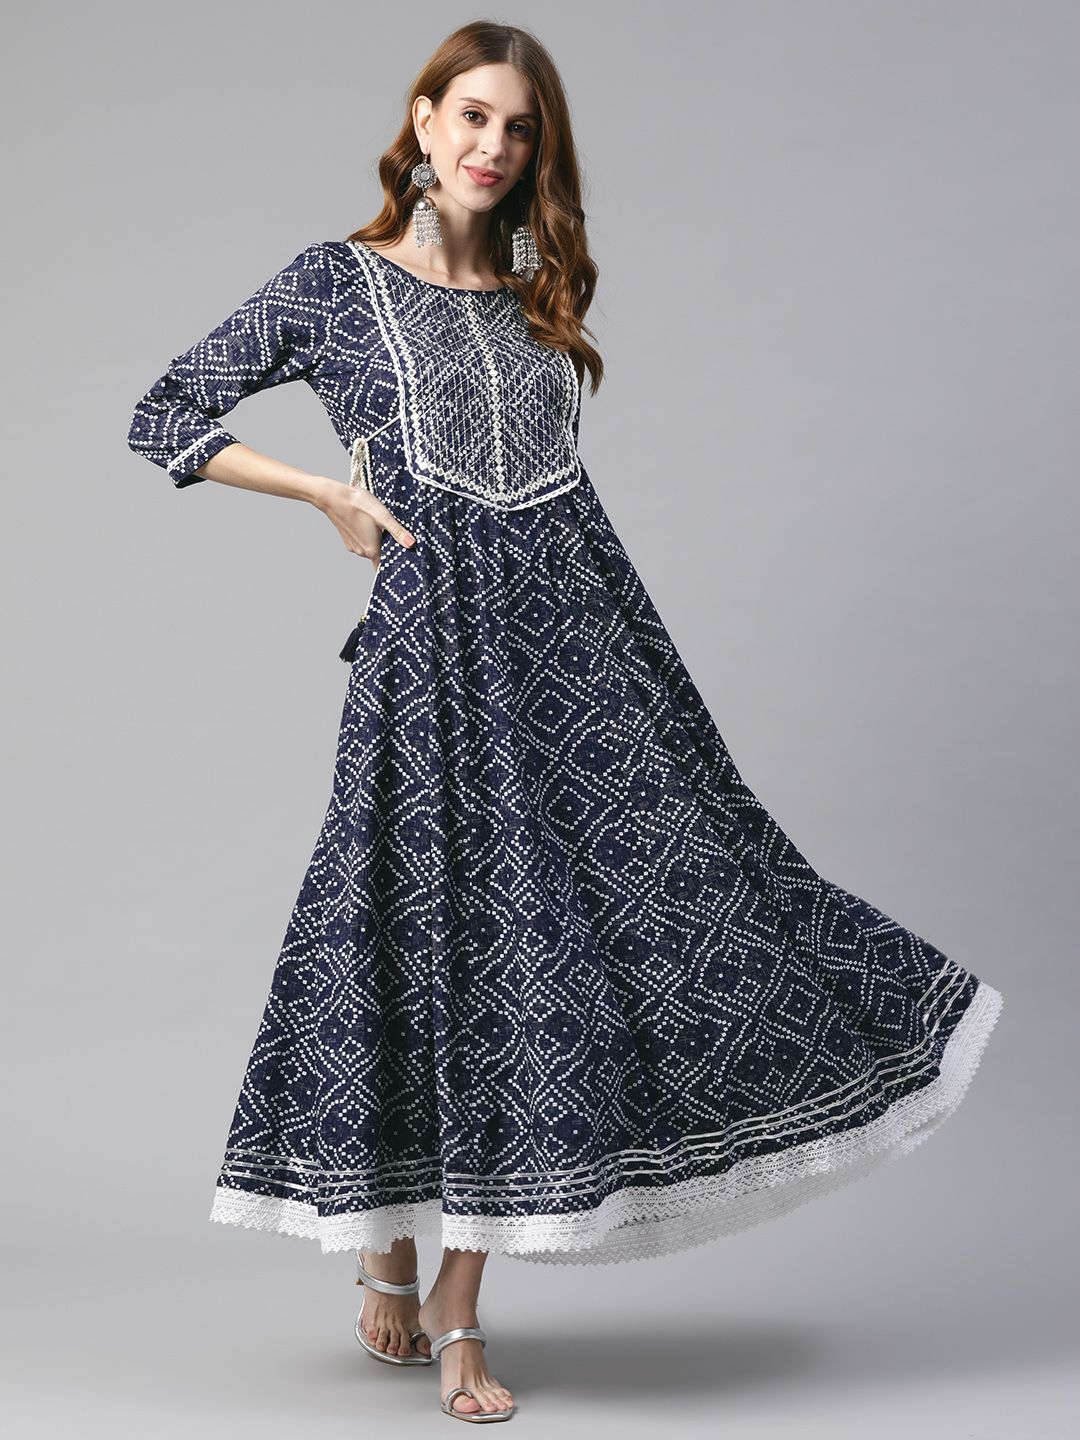 KALINI Navy Blue & White Ethnic Motifs Print Cotton Maxi Dress Price in India